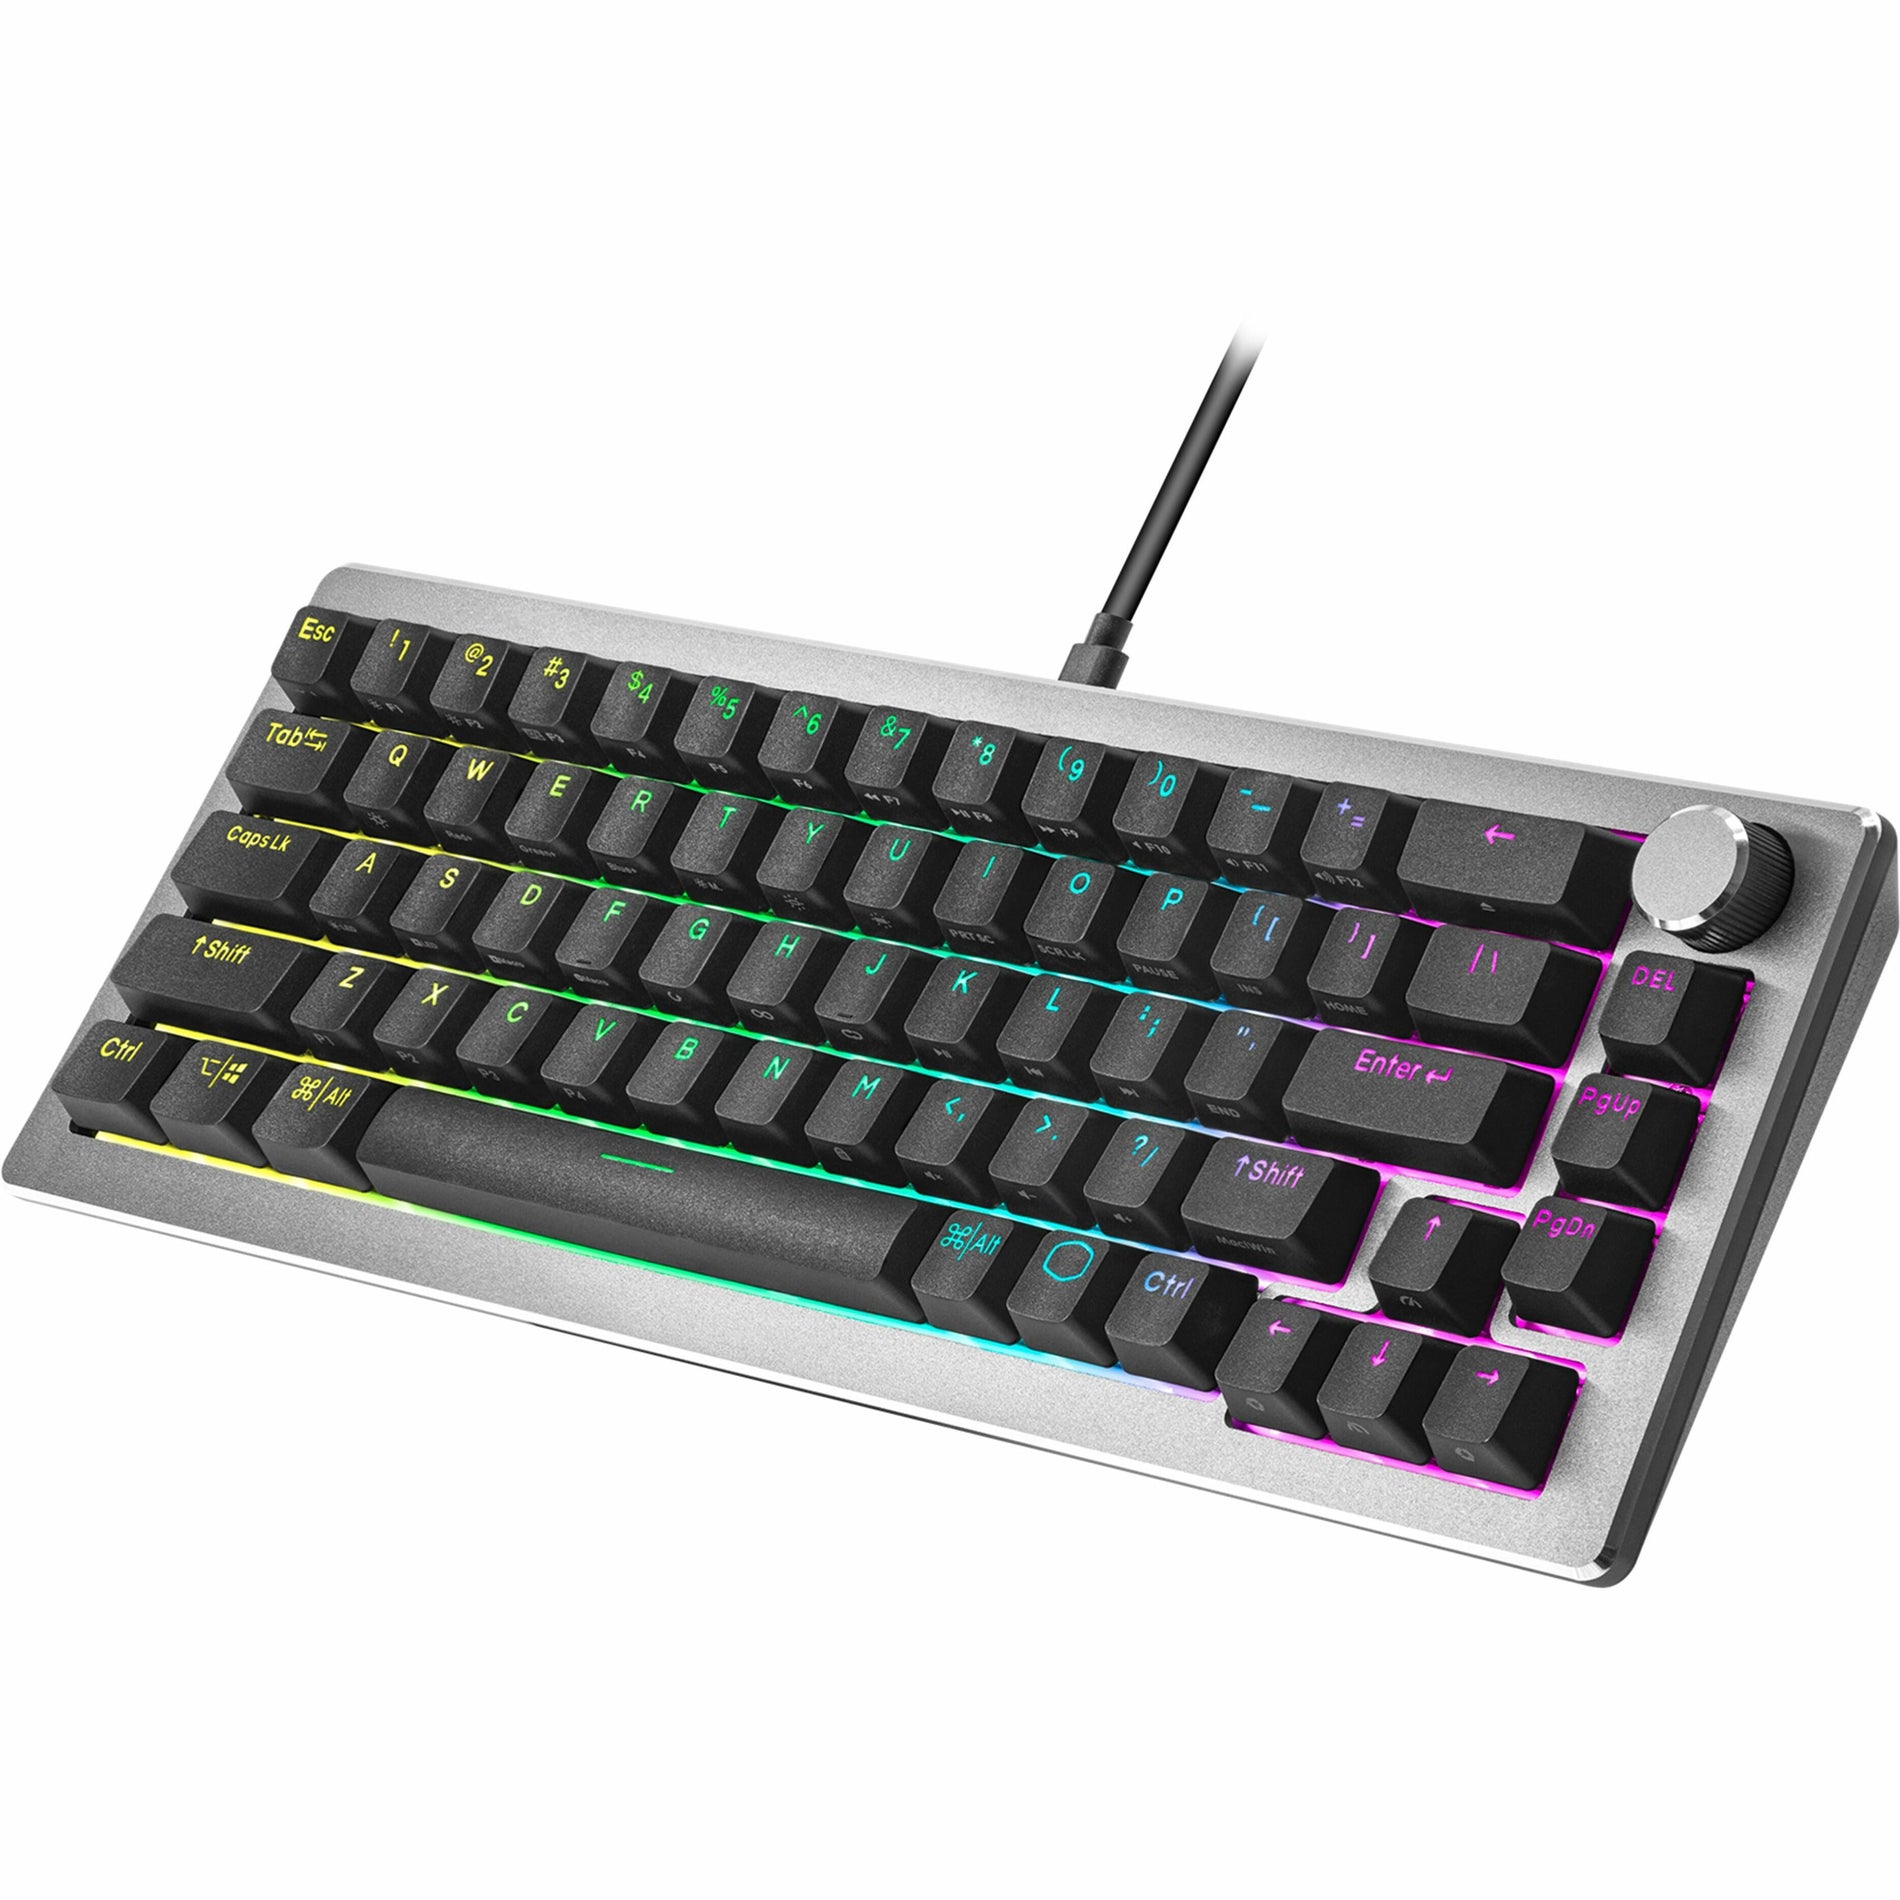 Cooler Master CK-720-GKKR1-US CK720 65% Gaming Keyboard, RGB LED Backlight, Mechanical Keyswitch Technology